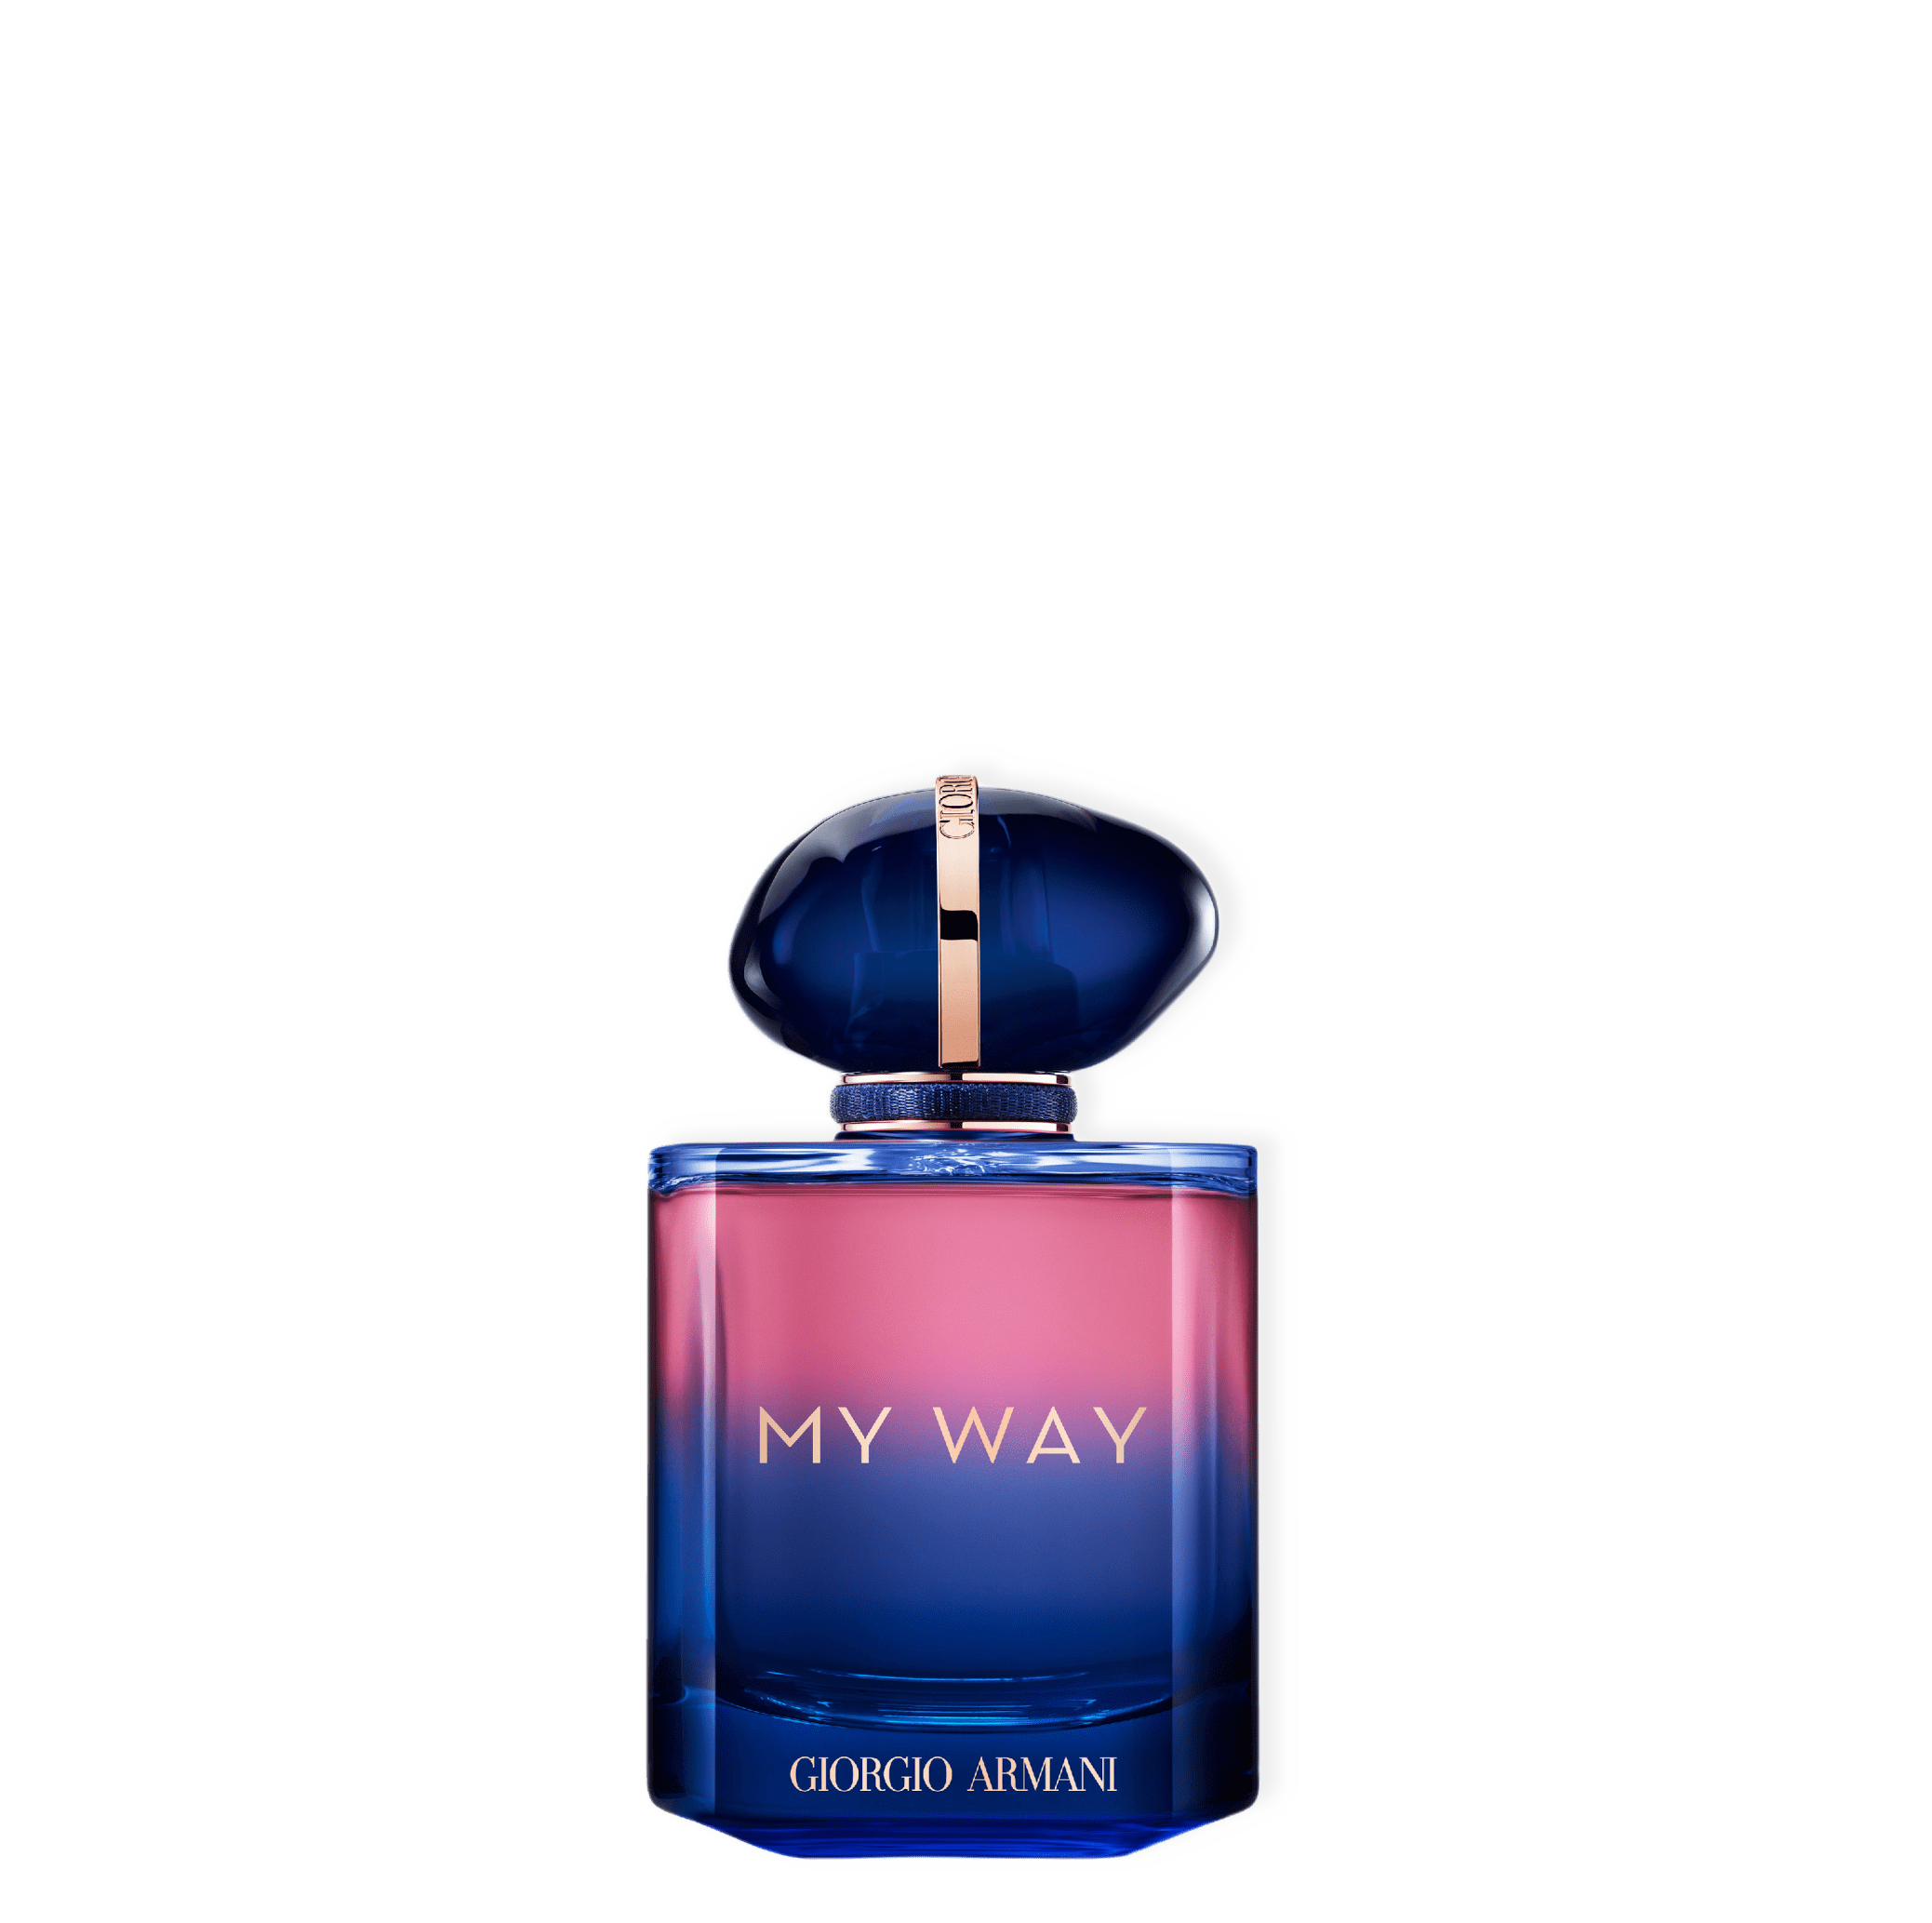 My Way Parfum från Armani